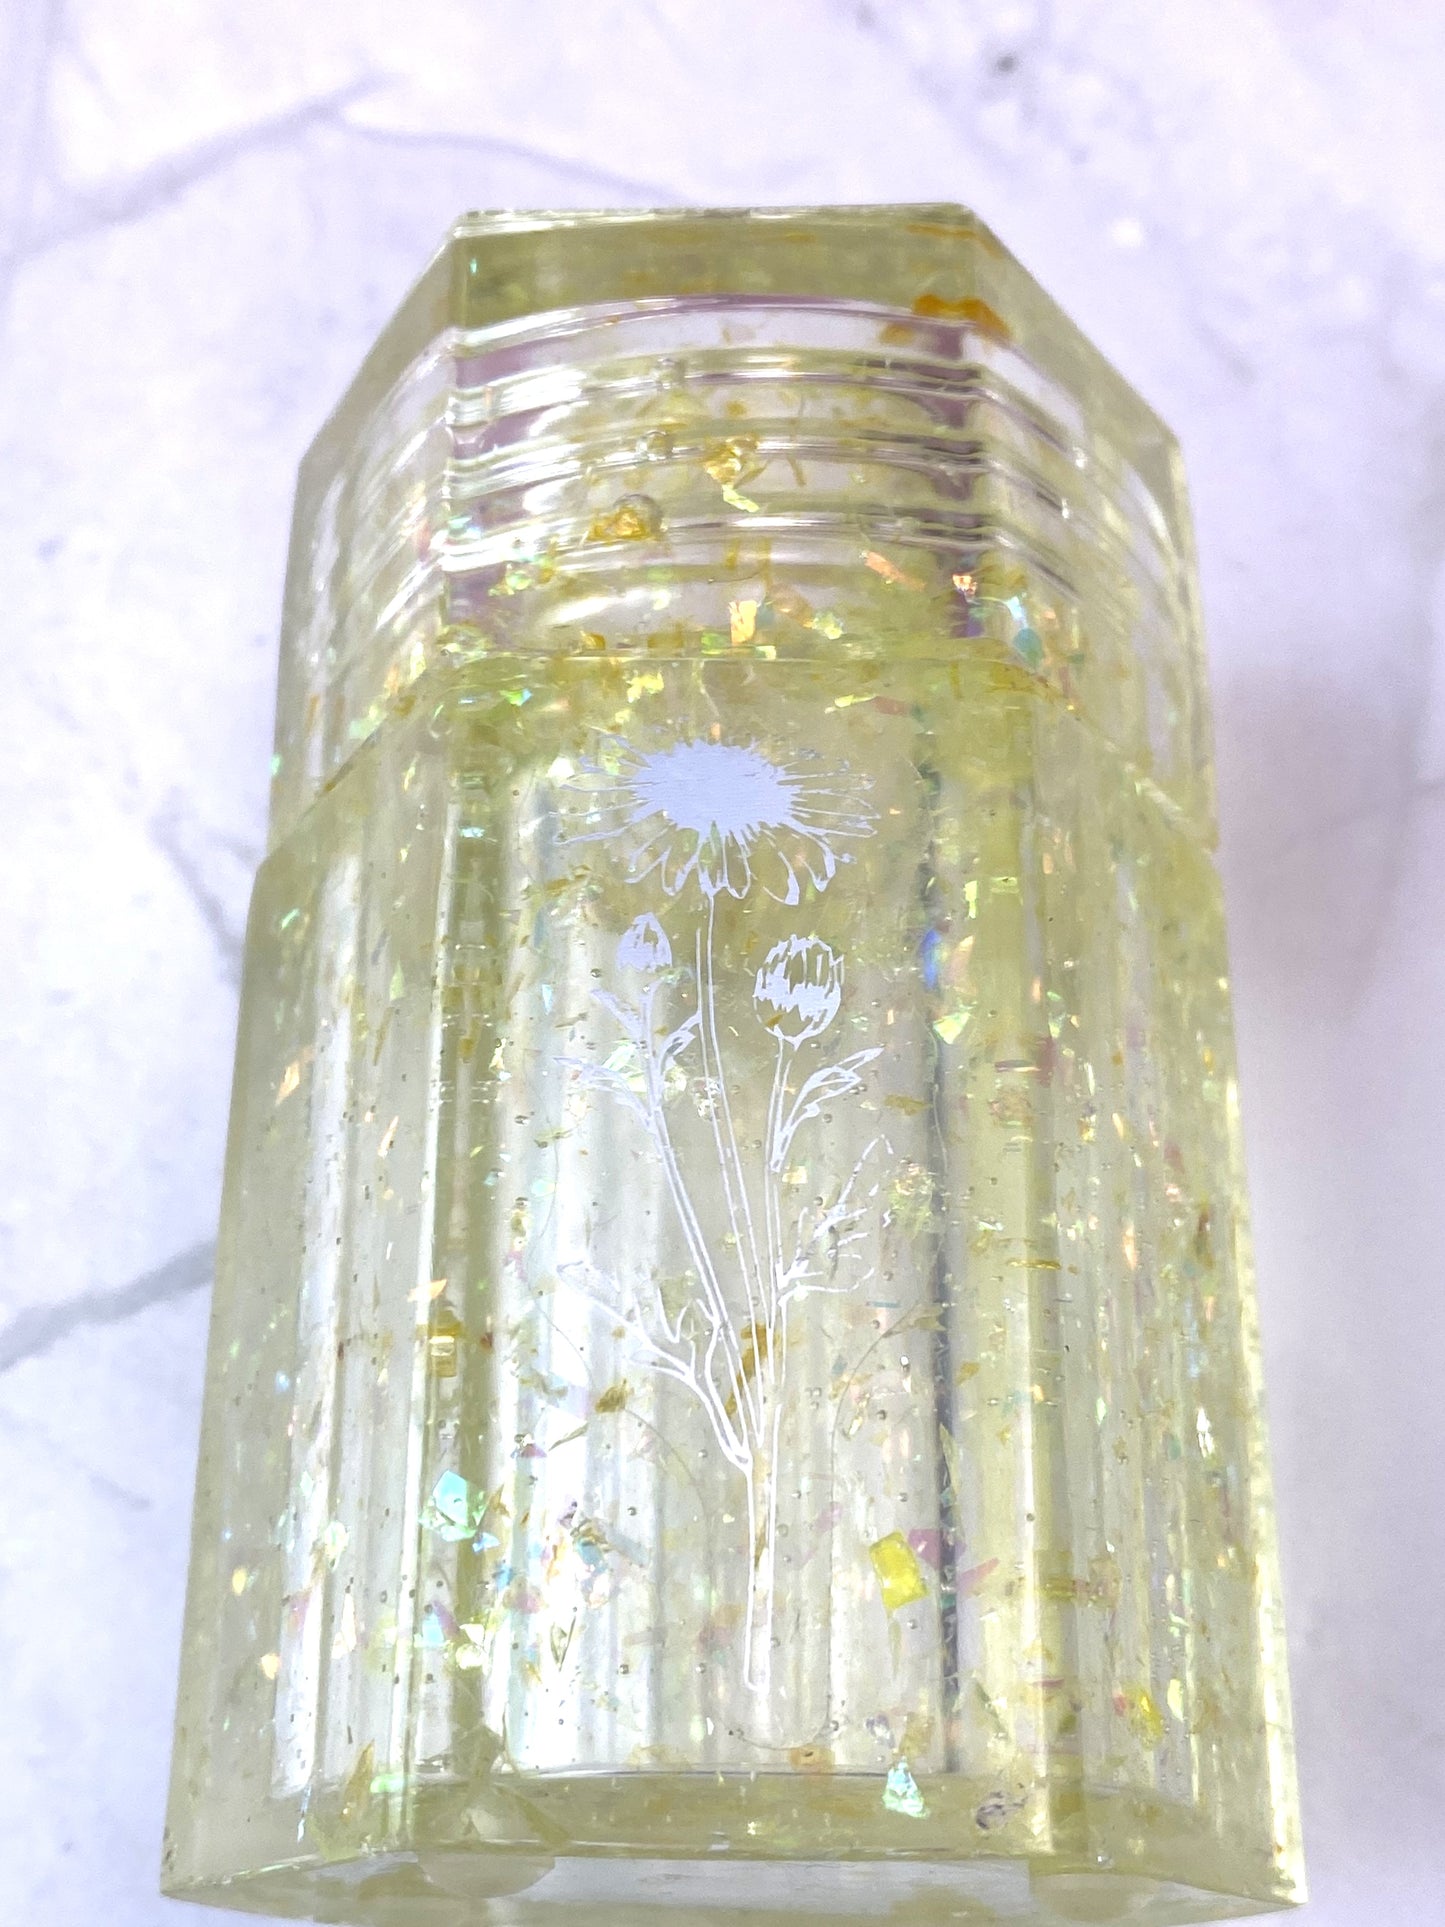 Yellow Glitter Small Hexagon Jar with Daisy Decal | Spell Jar | Stash Jar | Handmade Home Décor